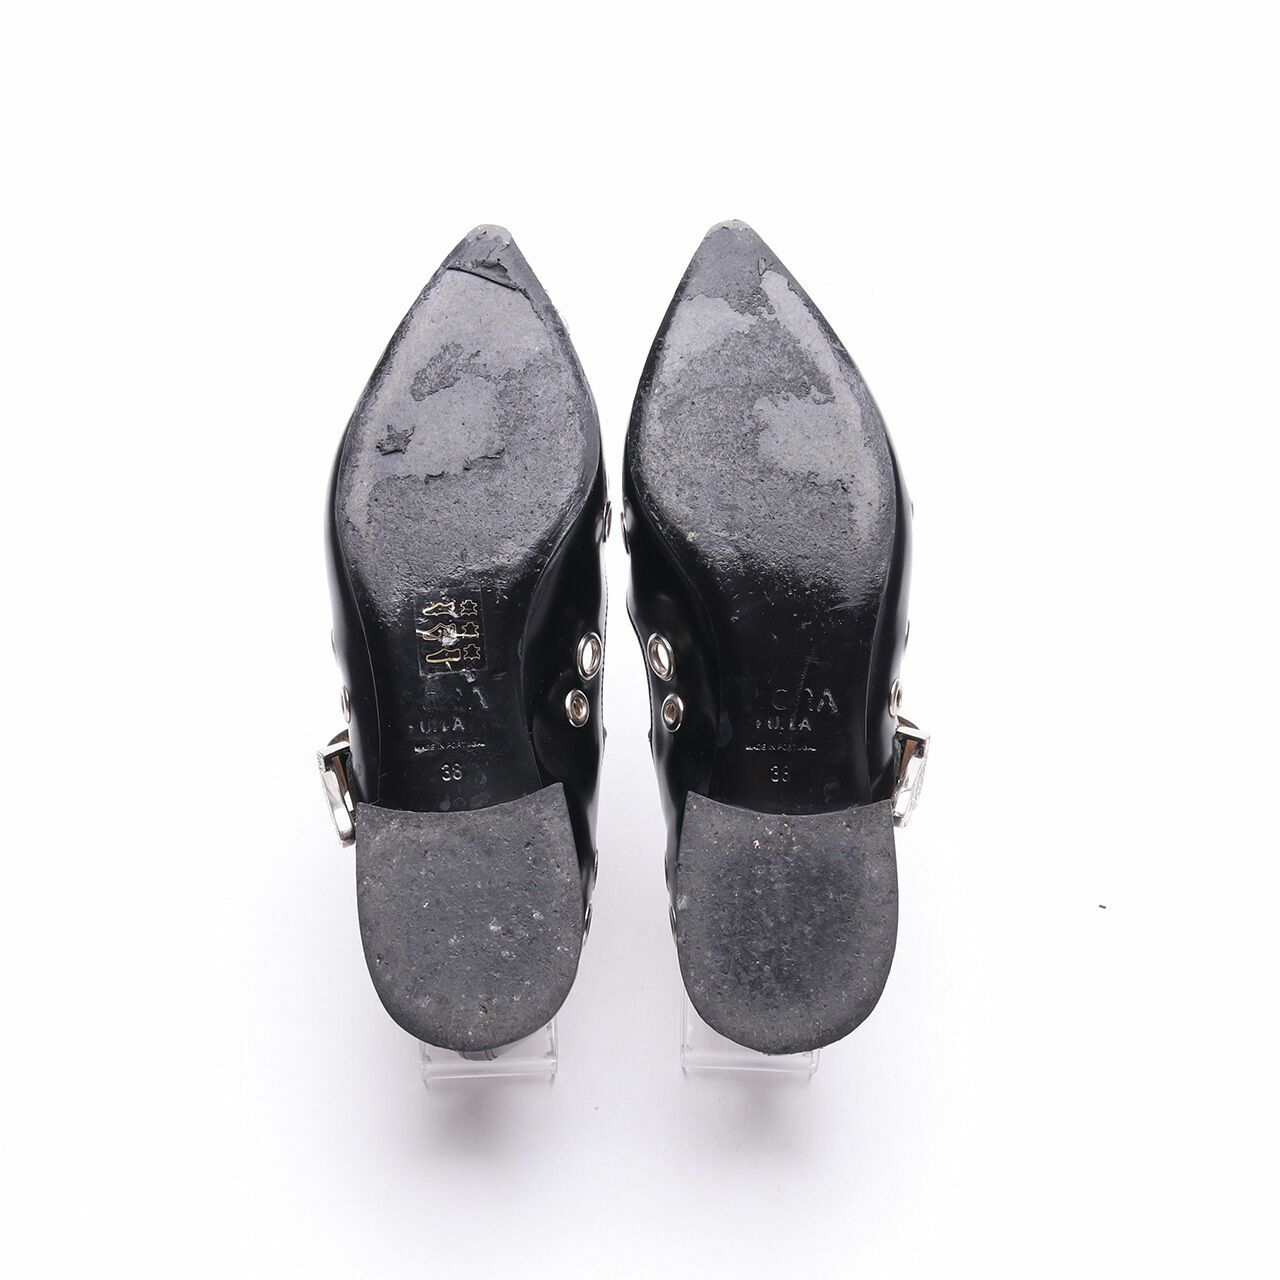 Toga Pulla Embellished Ballerina Black Flats Shoes